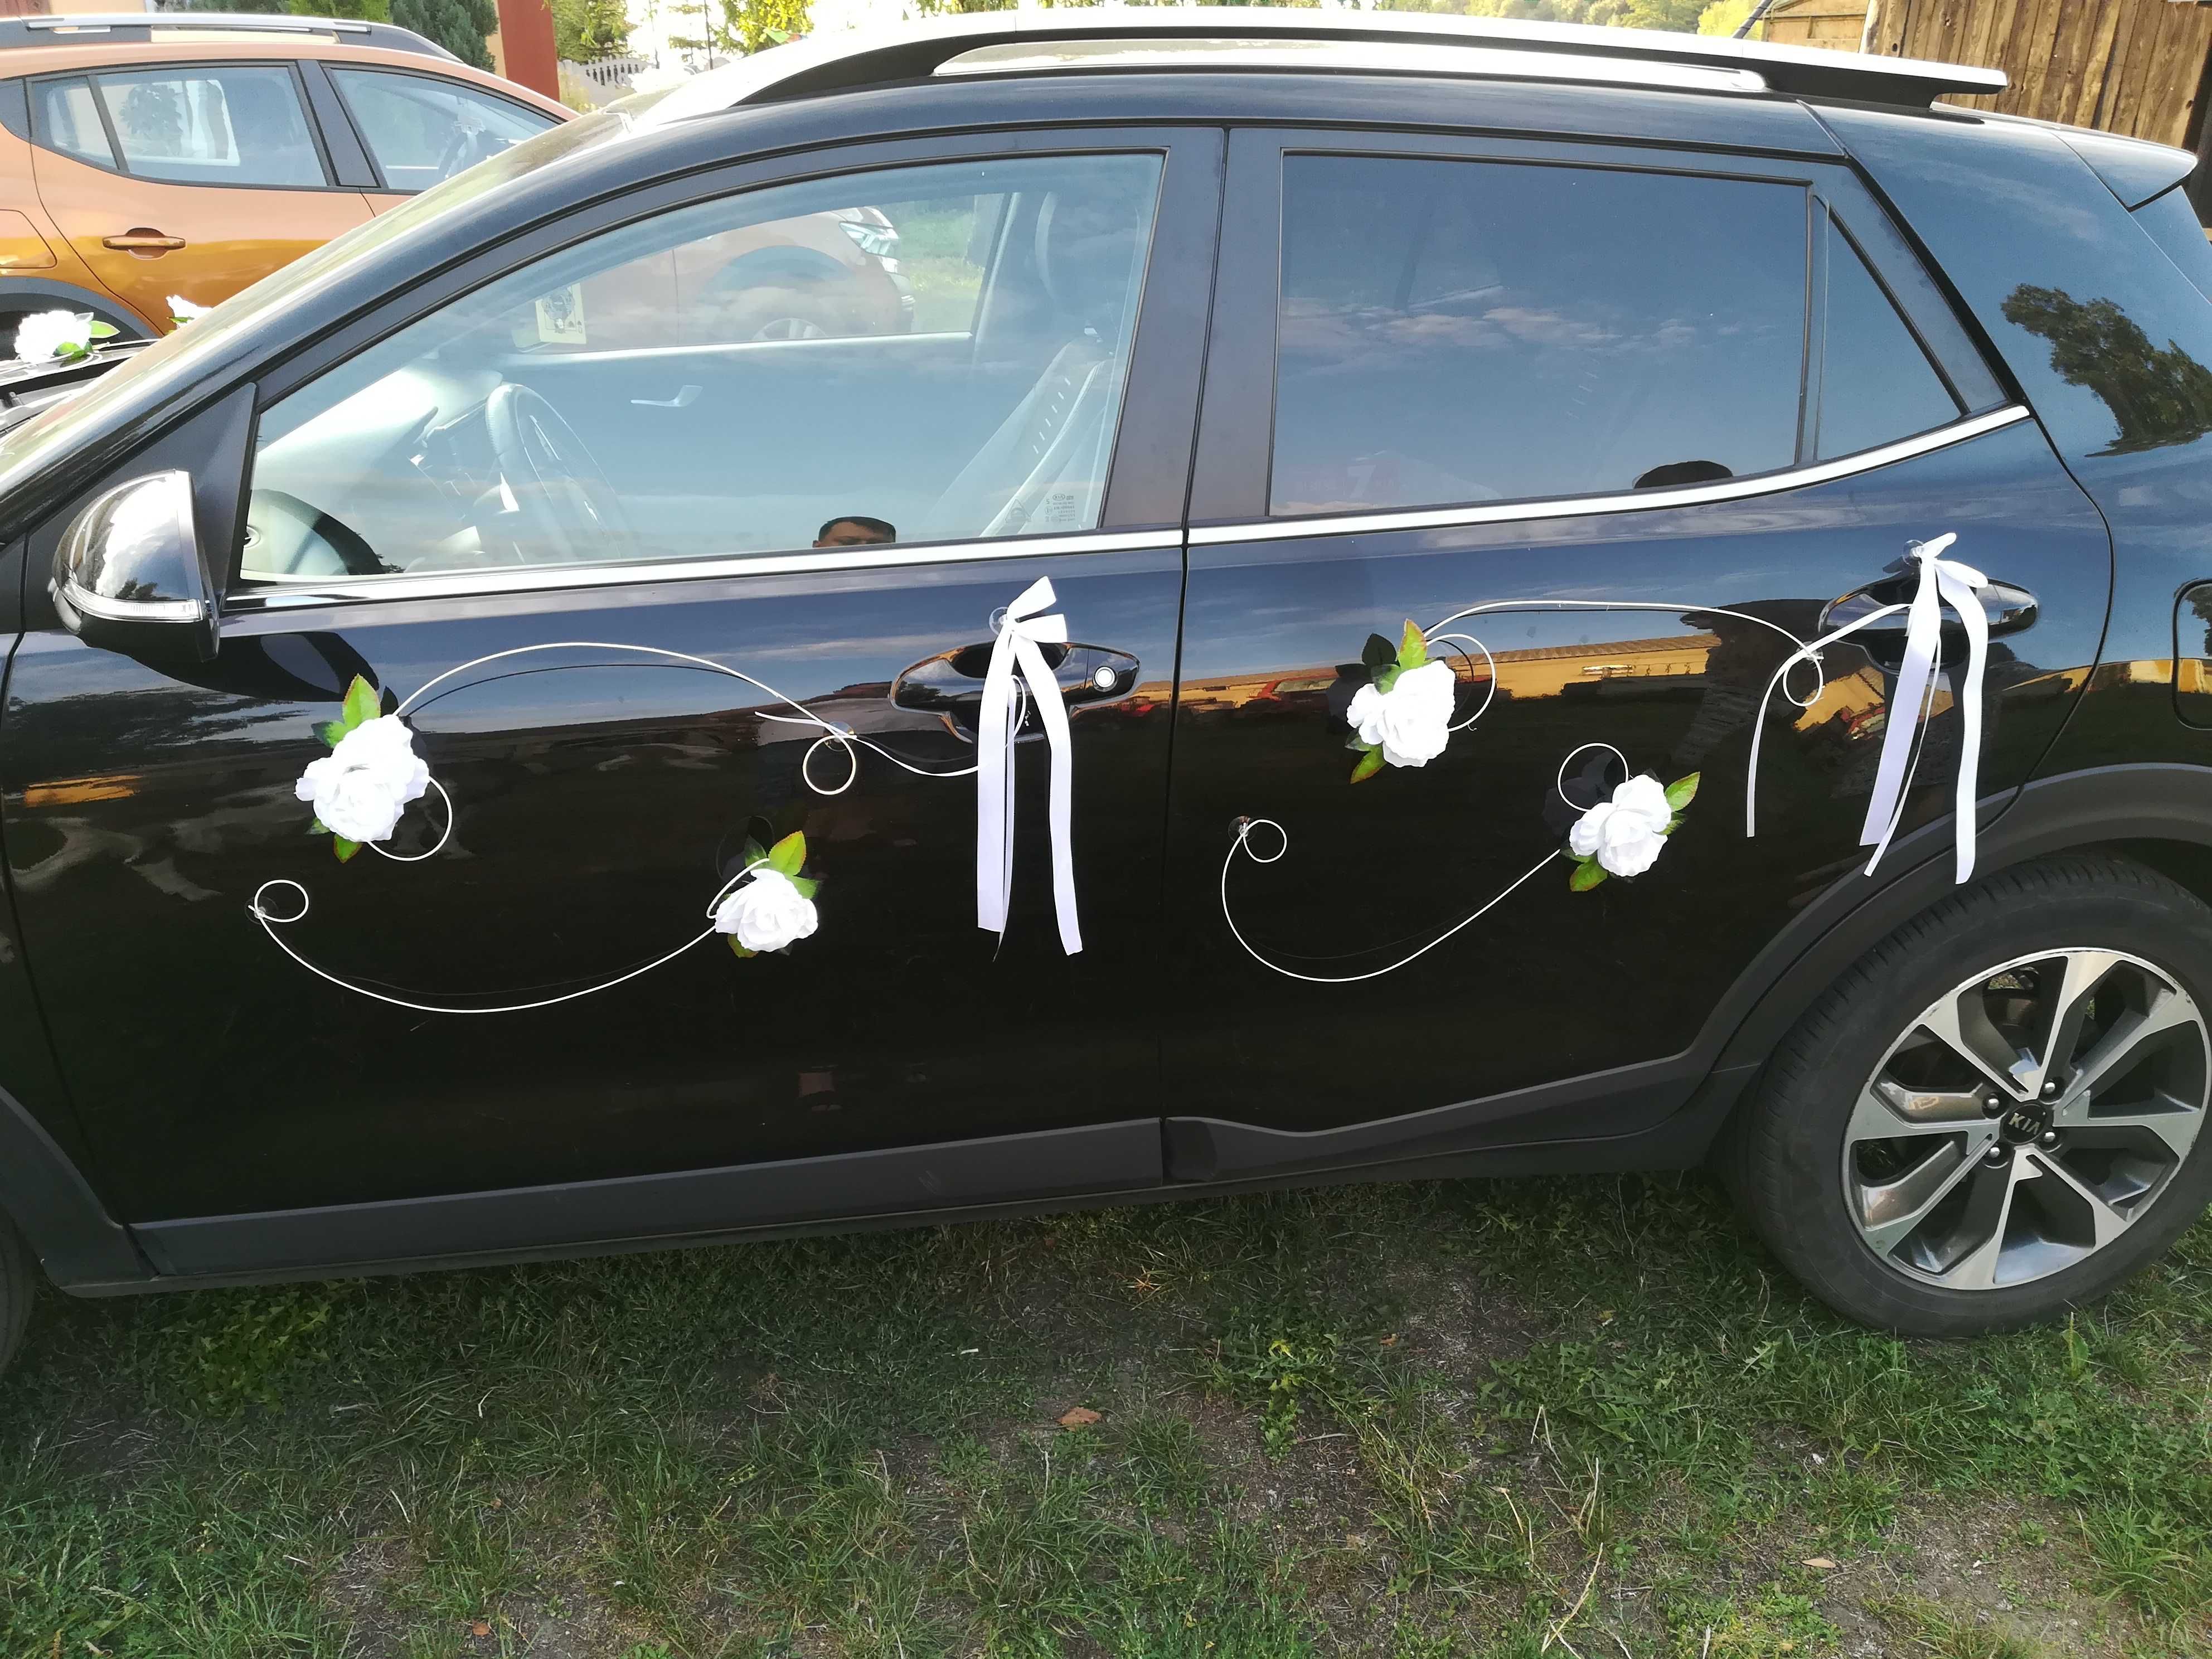 ślub wesele dekoracja samochodu weselnego kwiaty białe róże